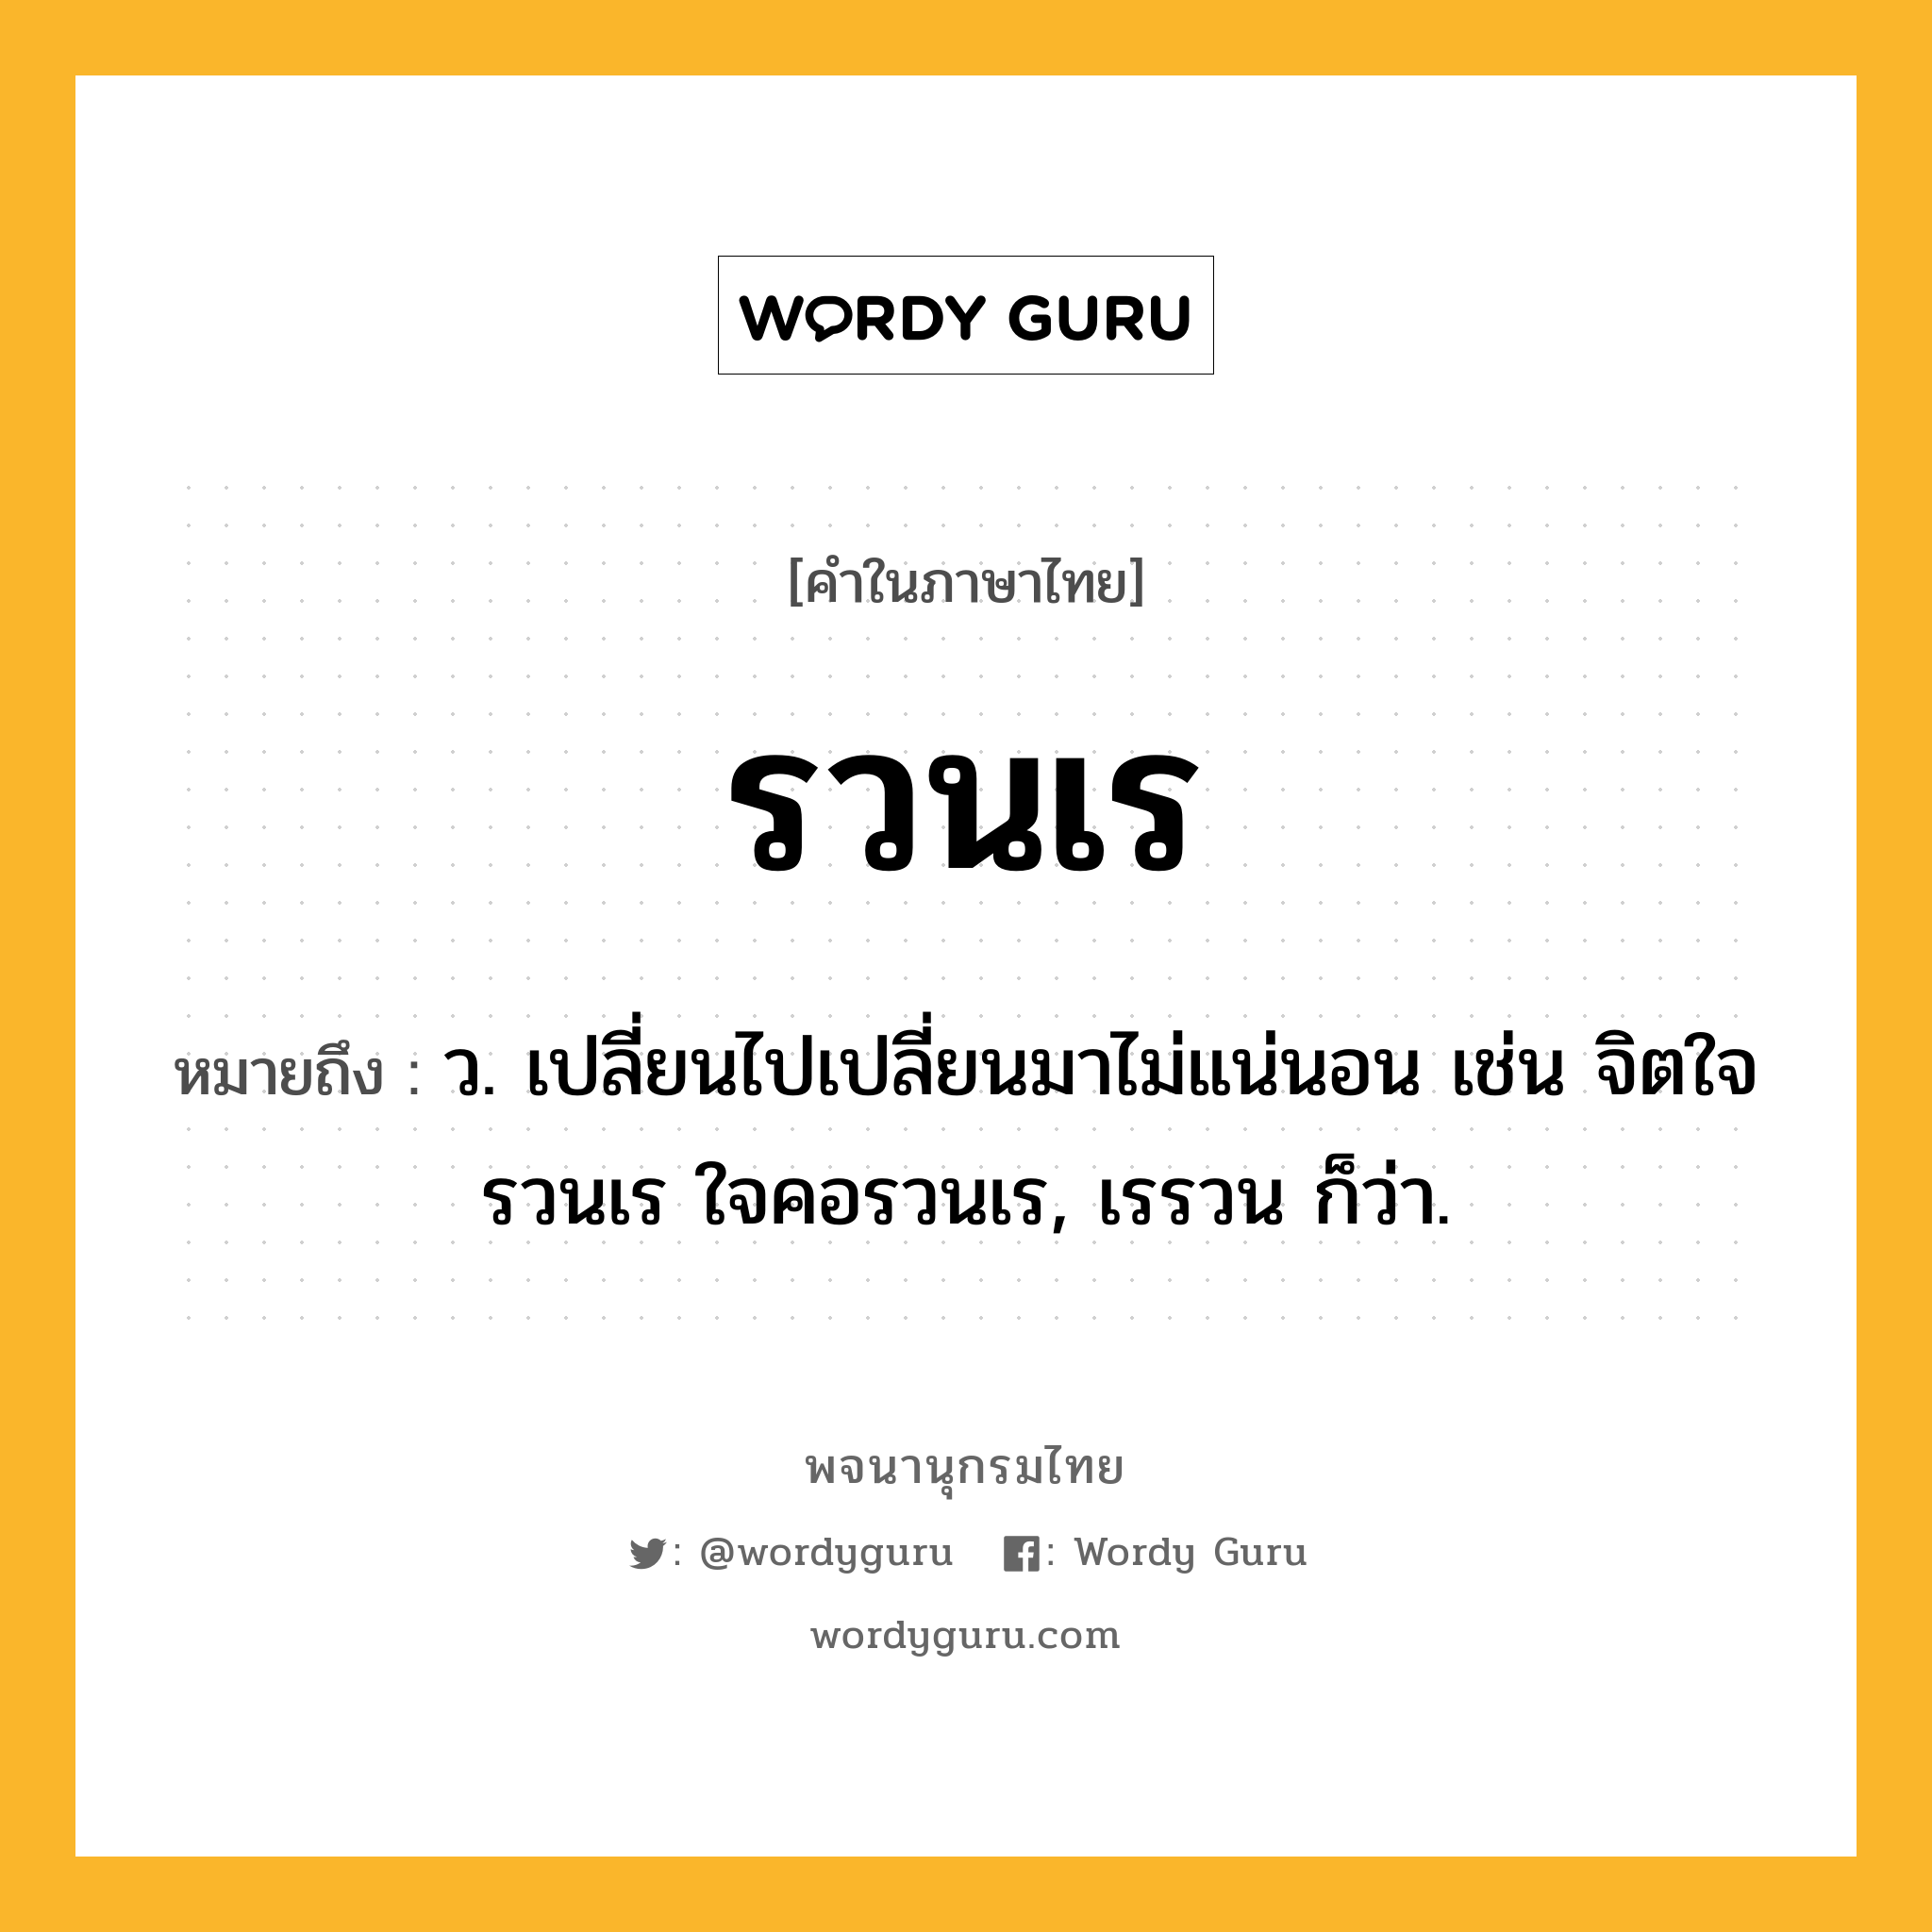 รวนเร ความหมาย หมายถึงอะไร?, คำในภาษาไทย รวนเร หมายถึง ว. เปลี่ยนไปเปลี่ยนมาไม่แน่นอน เช่น จิตใจรวนเร ใจคอรวนเร, เรรวน ก็ว่า.